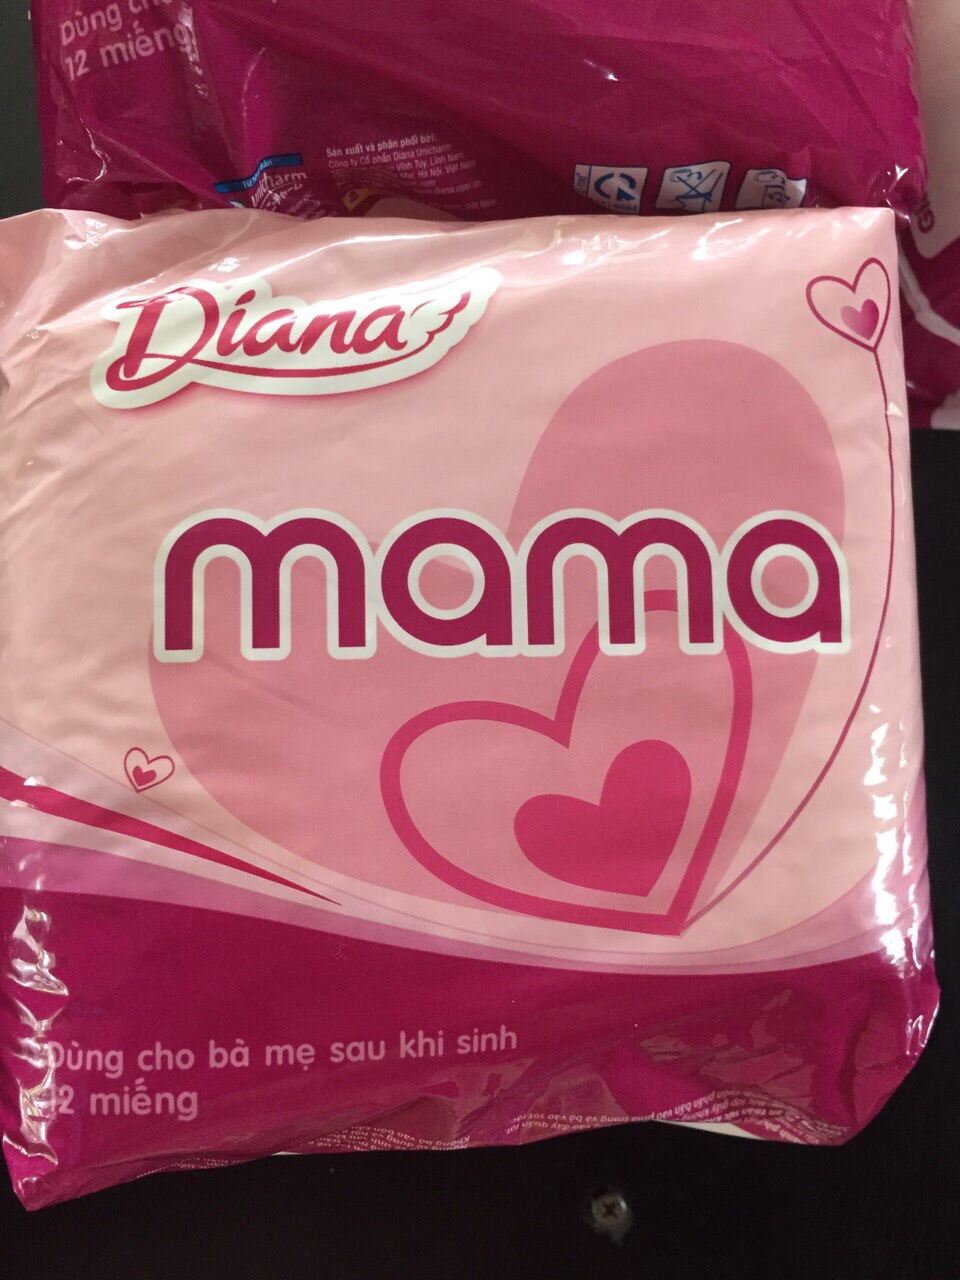 TpHCM - Combo 3 Gói Băng Vệ Sinh Diana Mama 12 miếng - HSD luôn mới